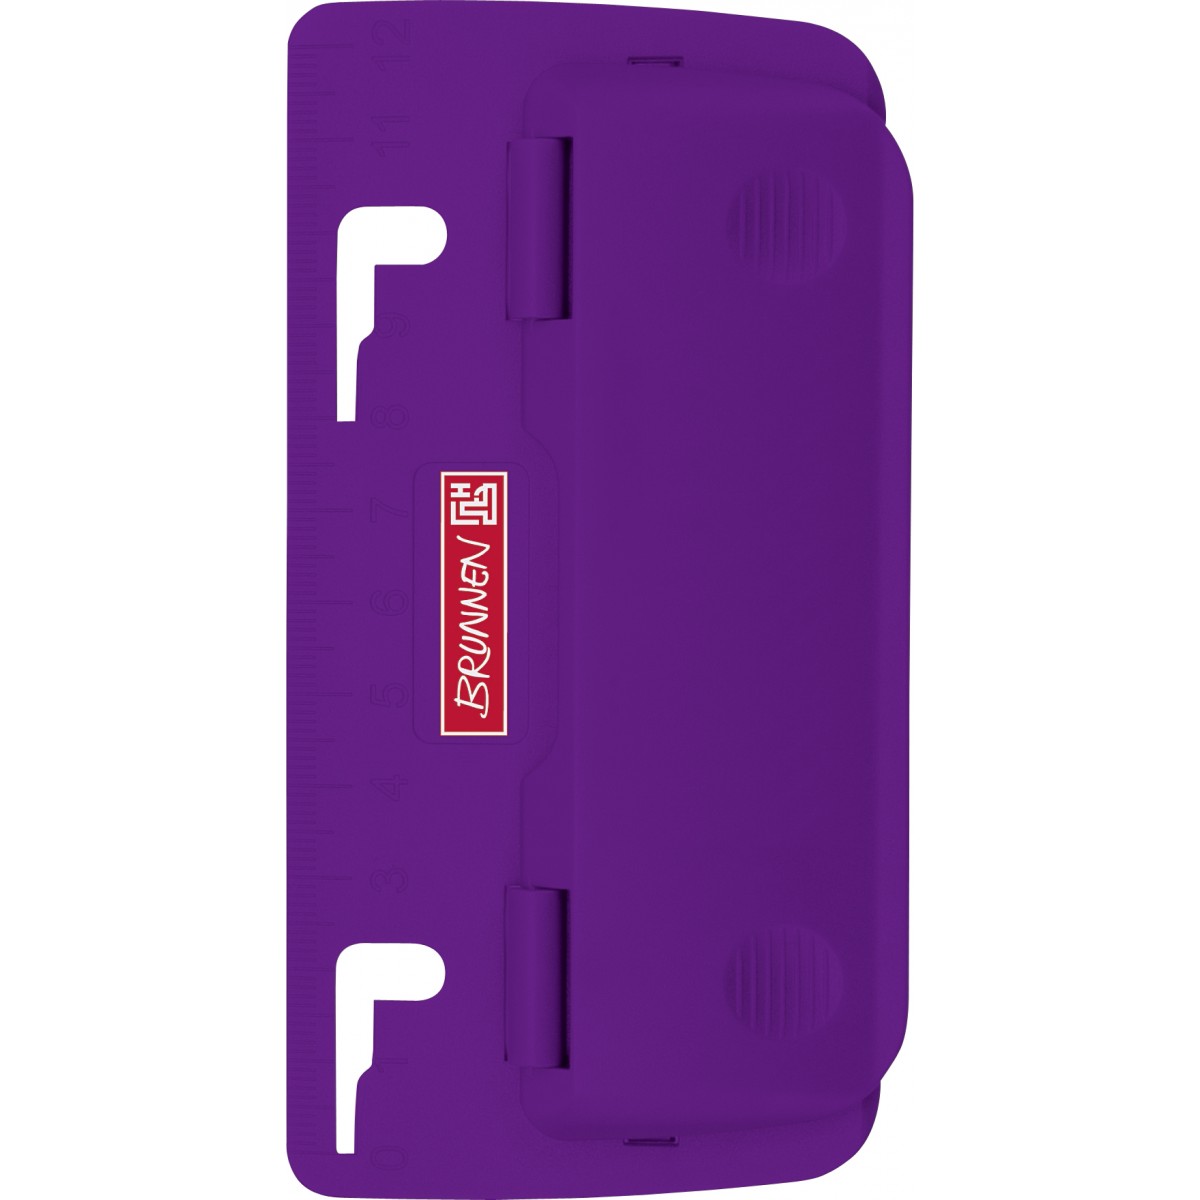 Taschenlocher Colour Code purple